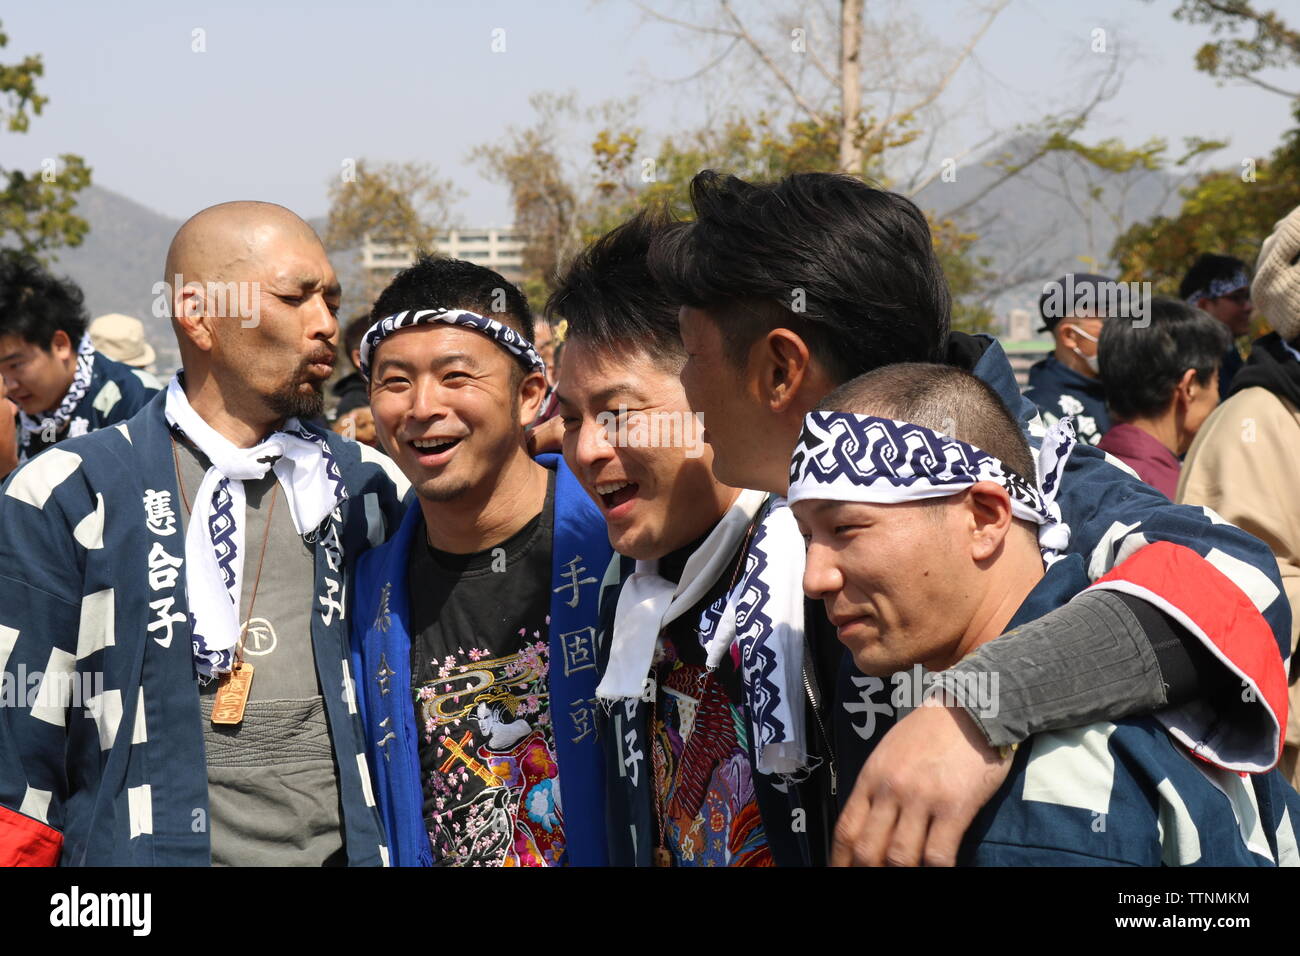 Les jeunes hommes de célébrer et de rire après avoir poussé flotte dans le port de bandeaux et festival Inuyama vestes traditionnelles Banque D'Images